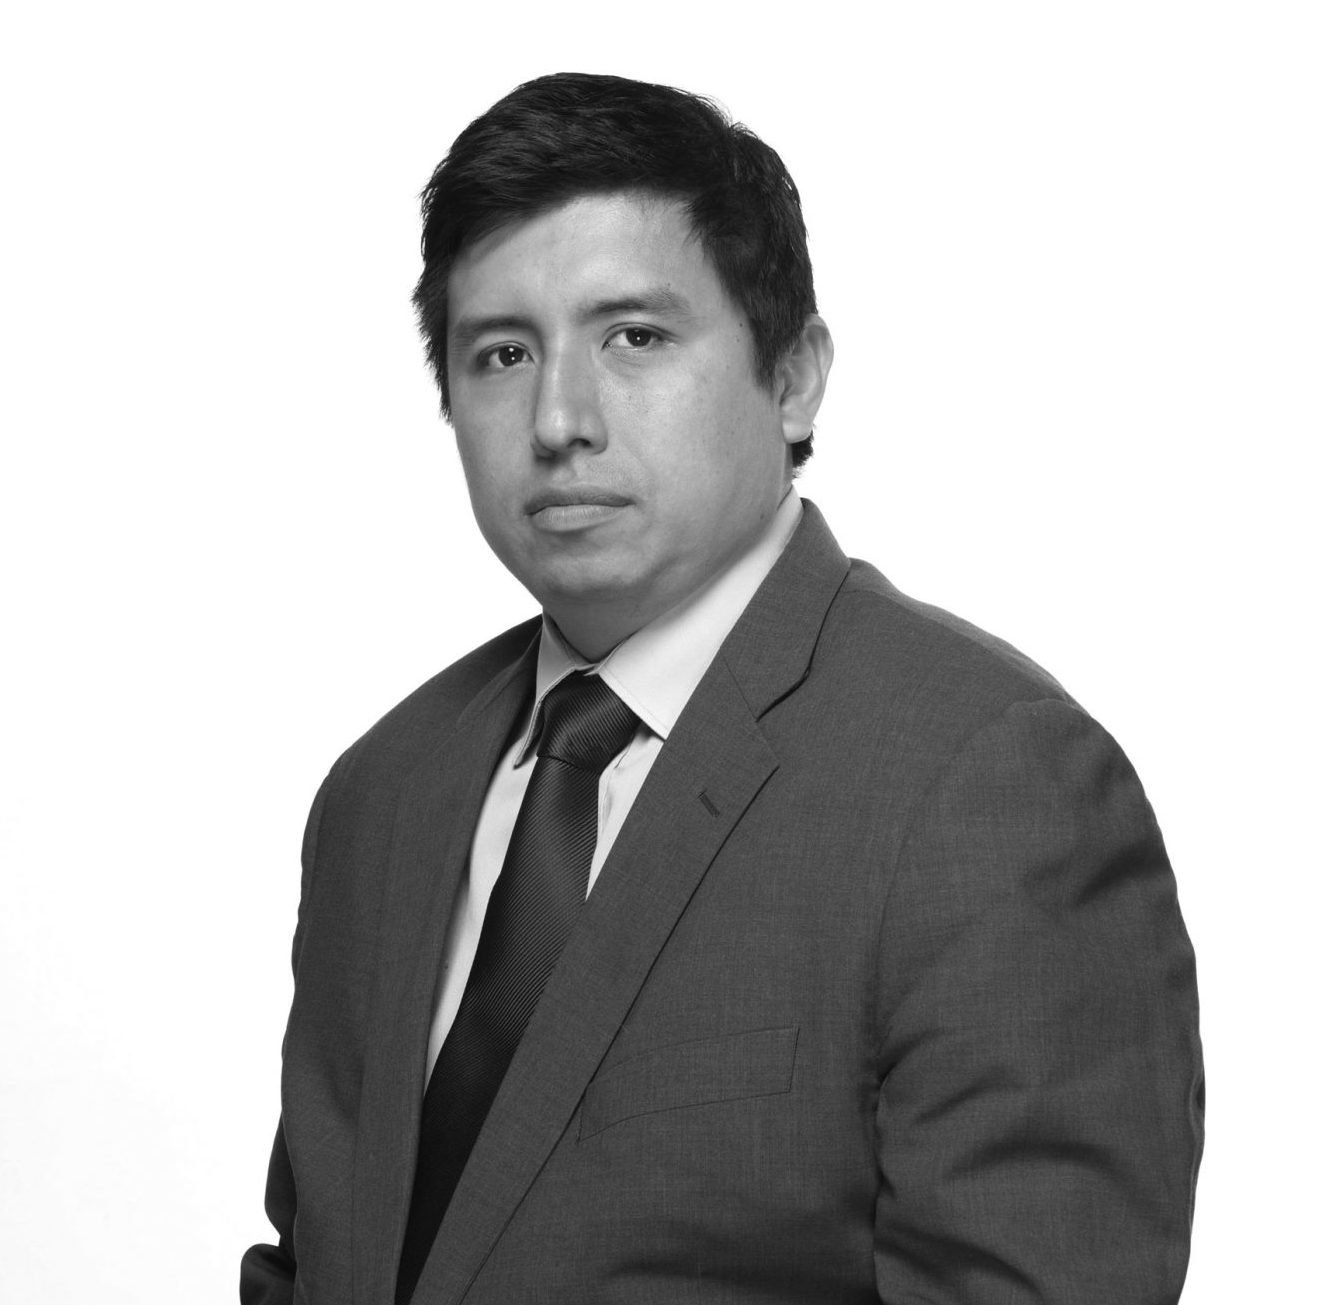 Marco Castaneda